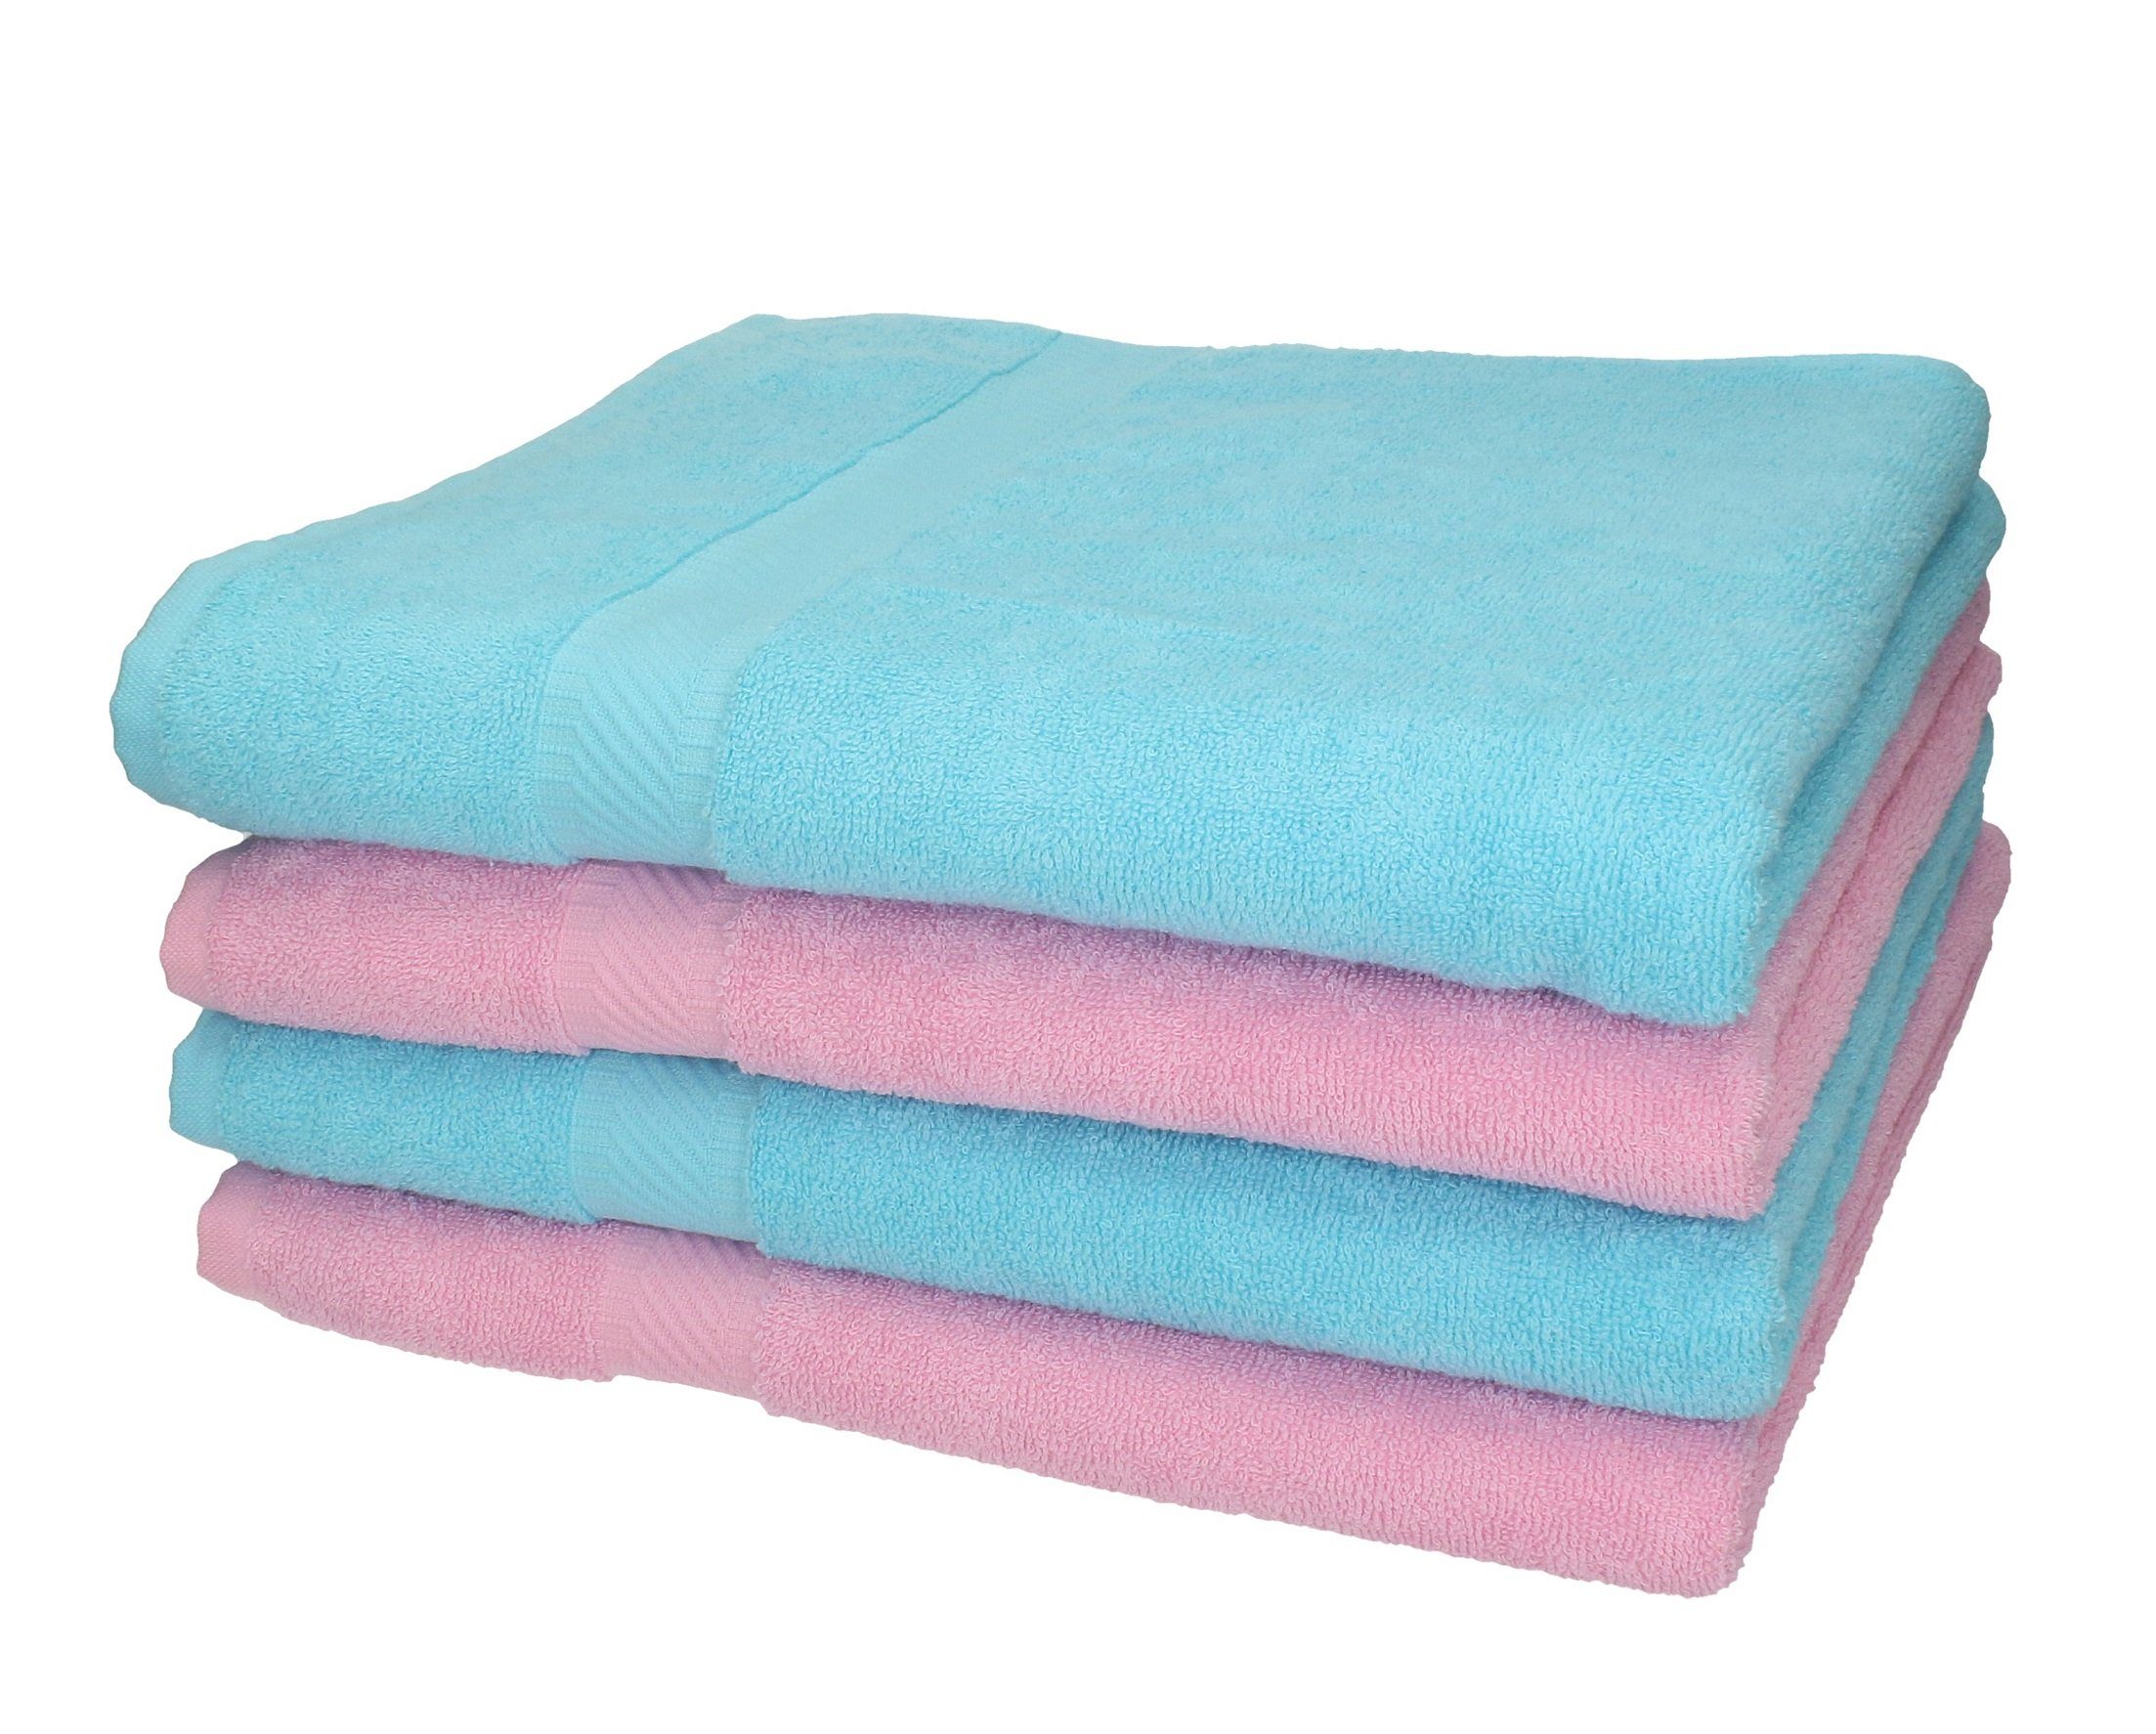 Betz Duschtücher 4 Stück Duschtücher Palermo 100% Baumwolle 70 x 140 cm rosé und türkis, 100% Baumwolle | Badetücher